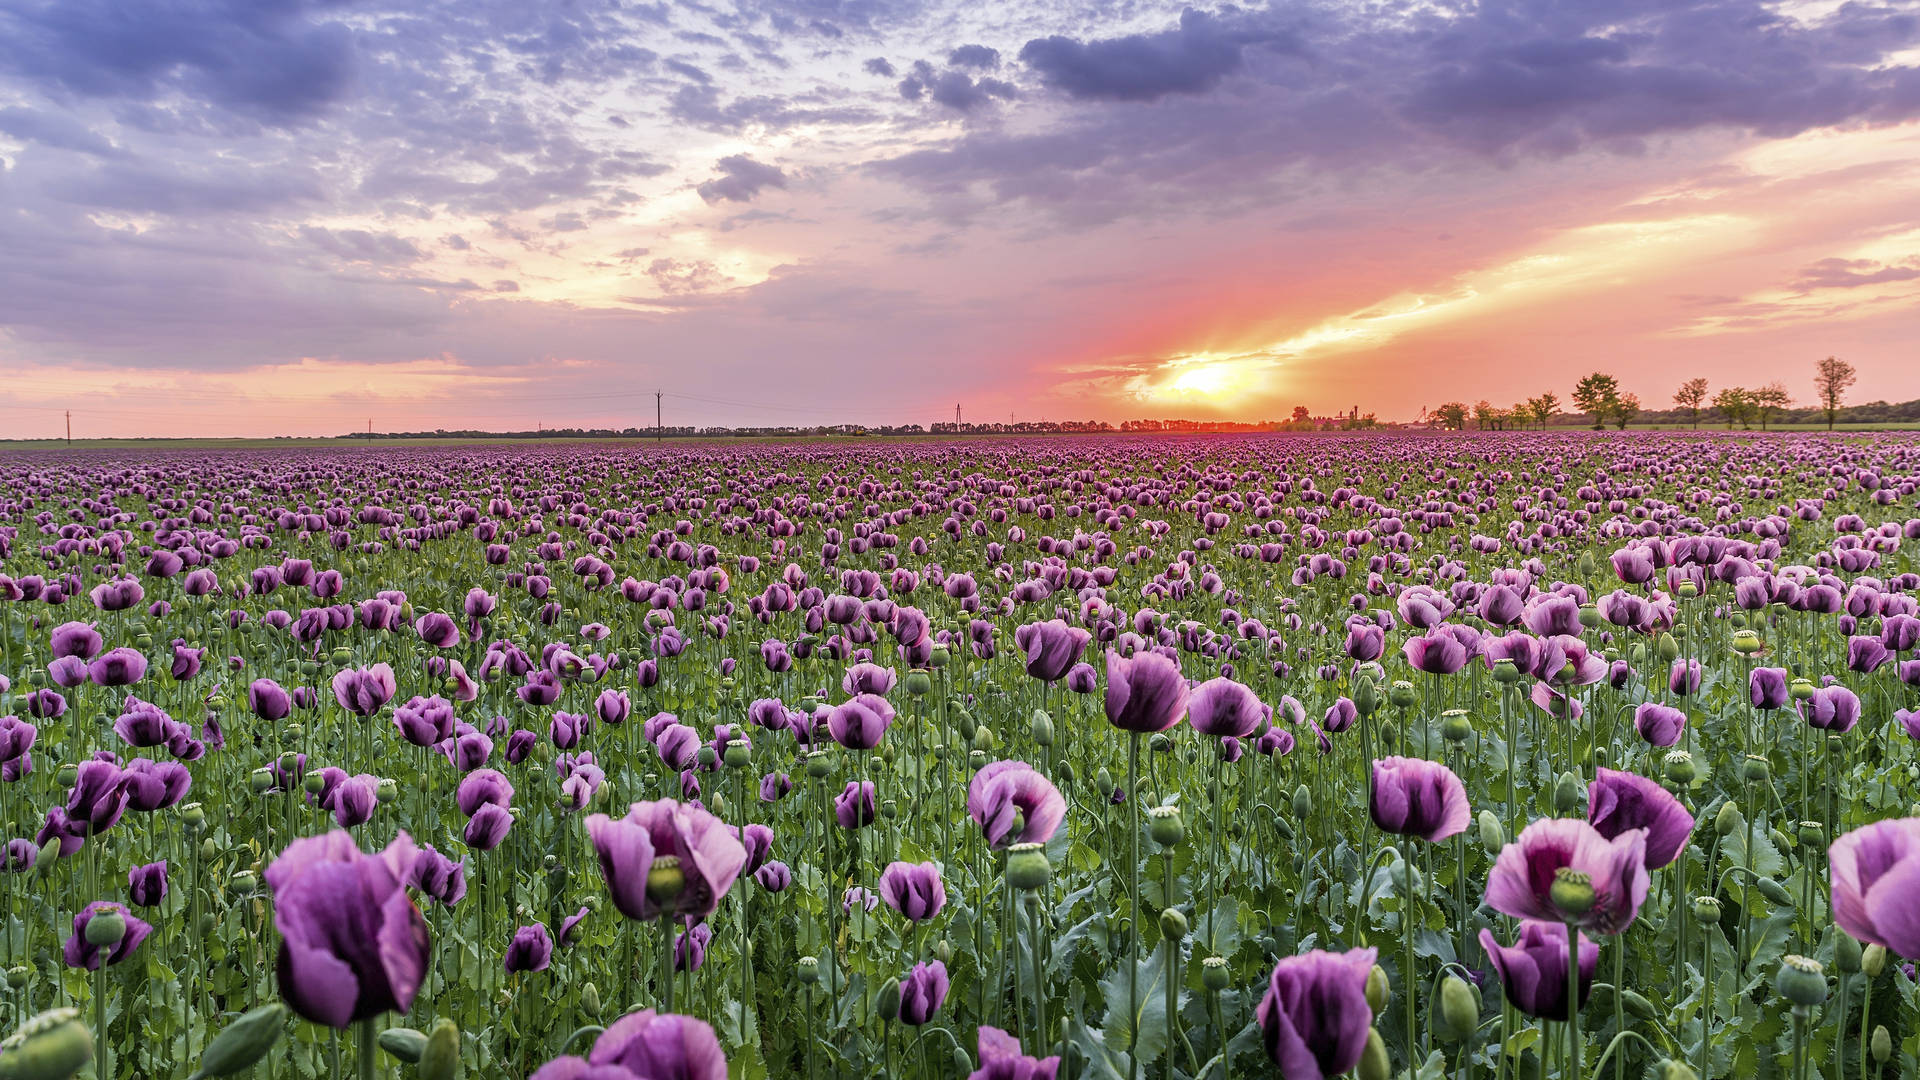 Floral Design: 4K himmel solnedgang lilla opium valmue blomsterdesign. Wallpaper